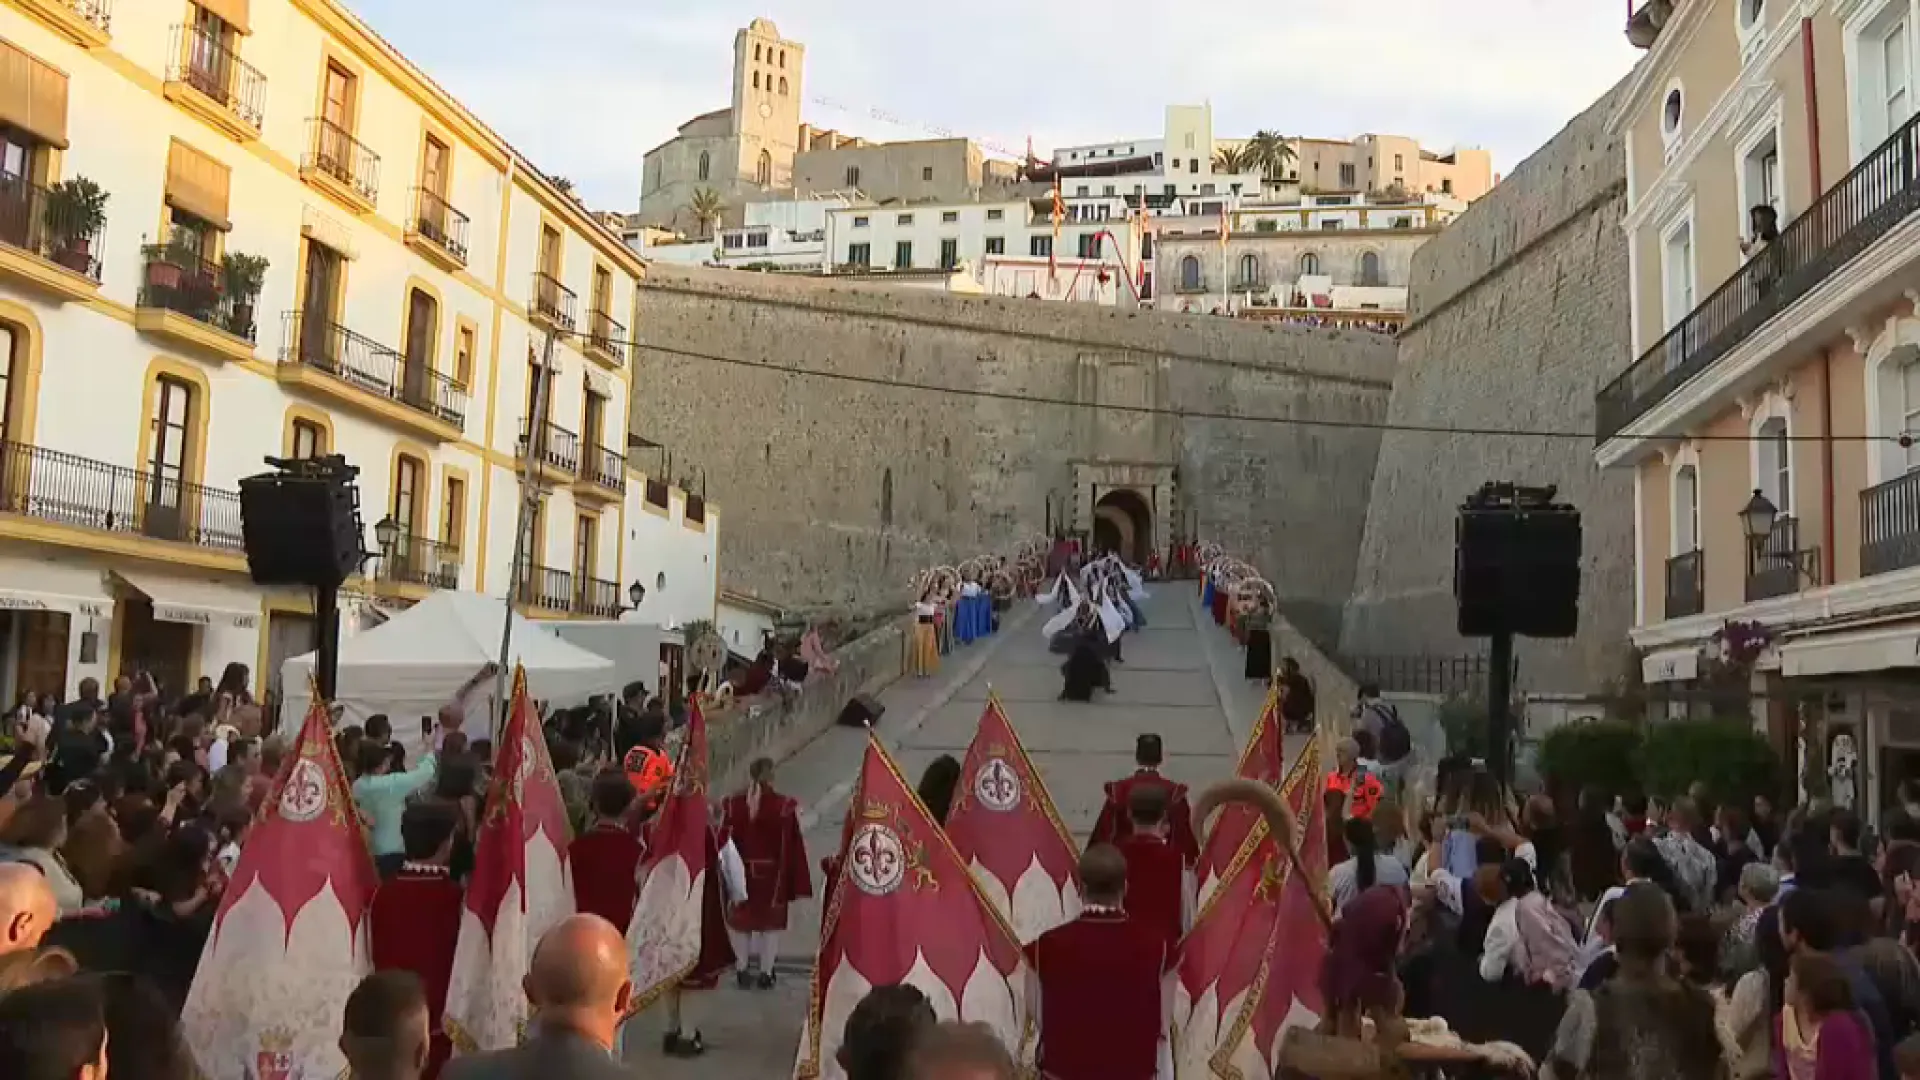 Arrenca la 24a edició de l’Eivissa Medieval amb un espectacle itinerant